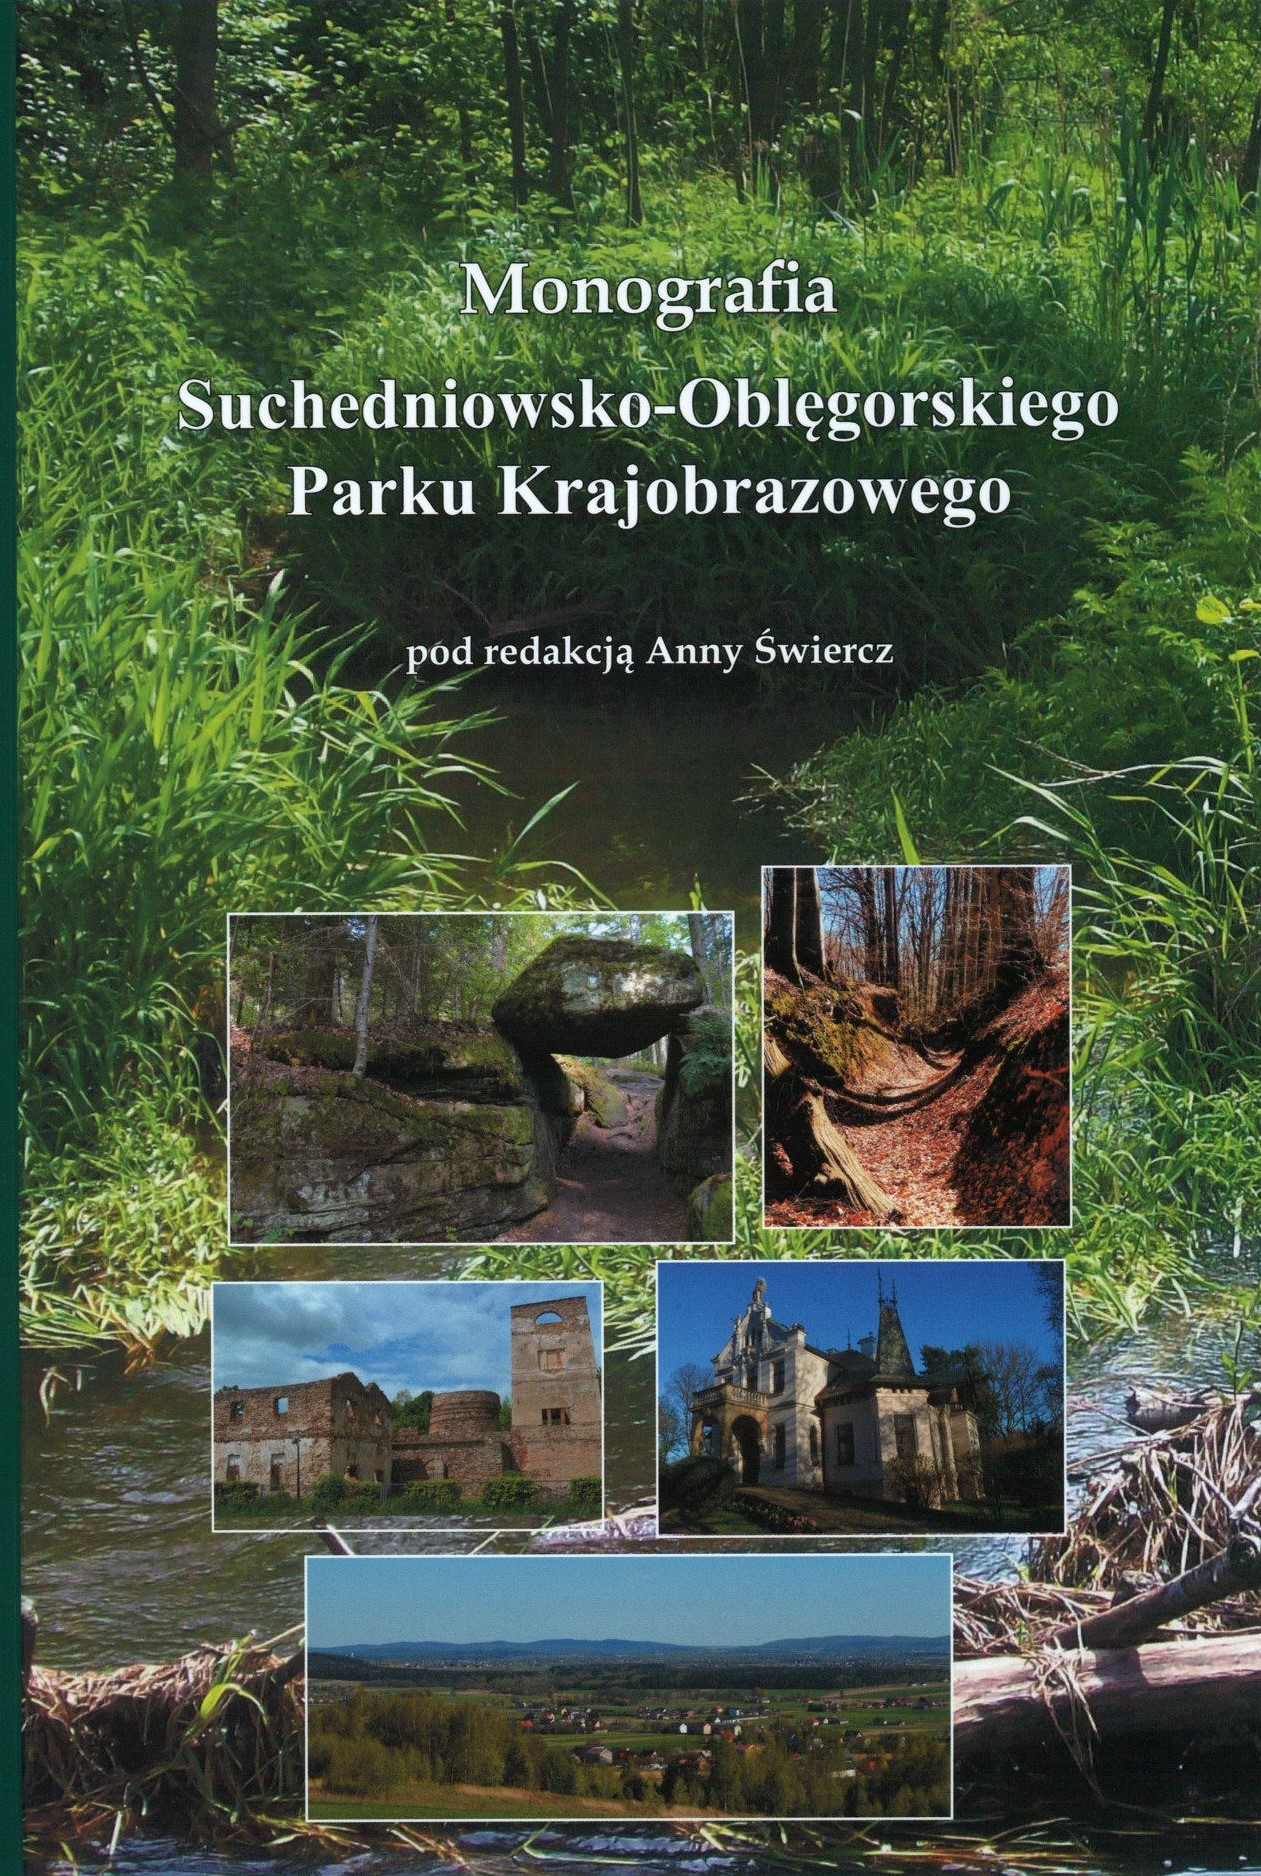 Okładka monografii na której są zdjęcia krajobrazu regionu świętokrzyskiego